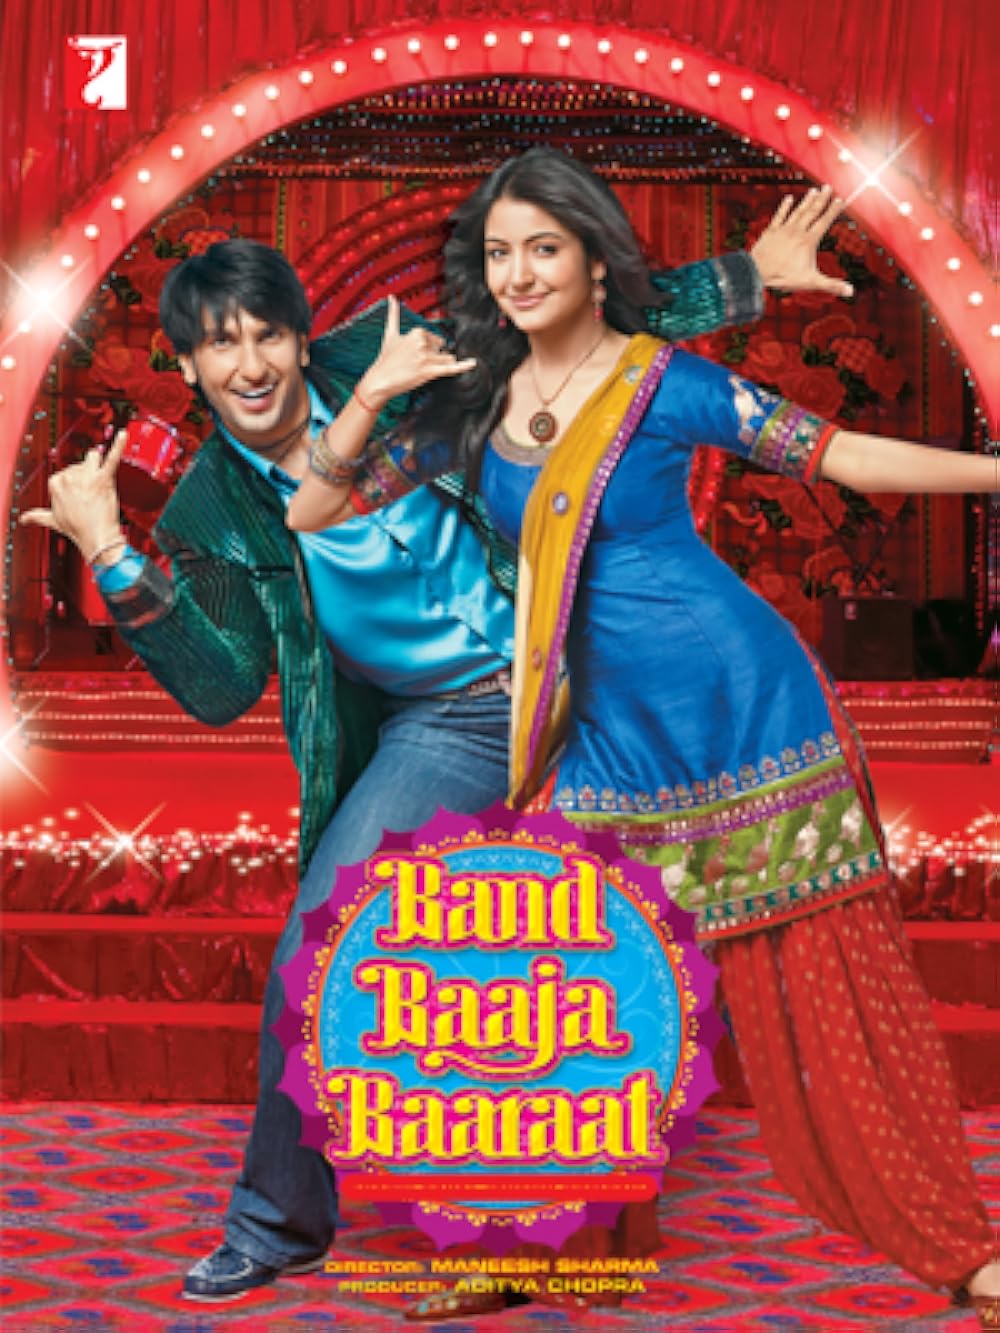 Download Band Baaja Baaraat (2010) Hindi Movie Bluray || 720p [900MB]